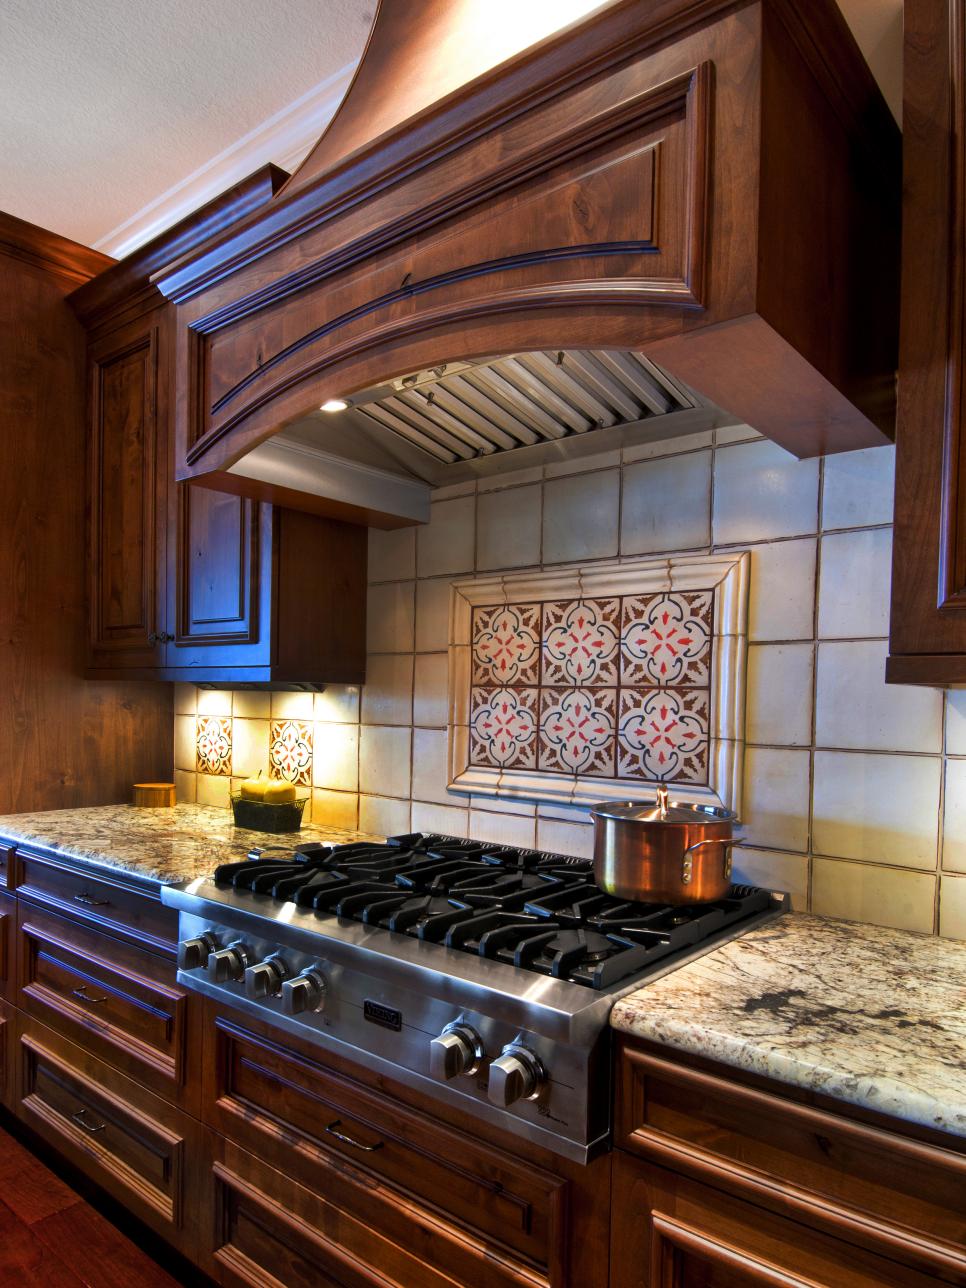 Patterned Tile Backsplash in Traditional Kitchen HGTV